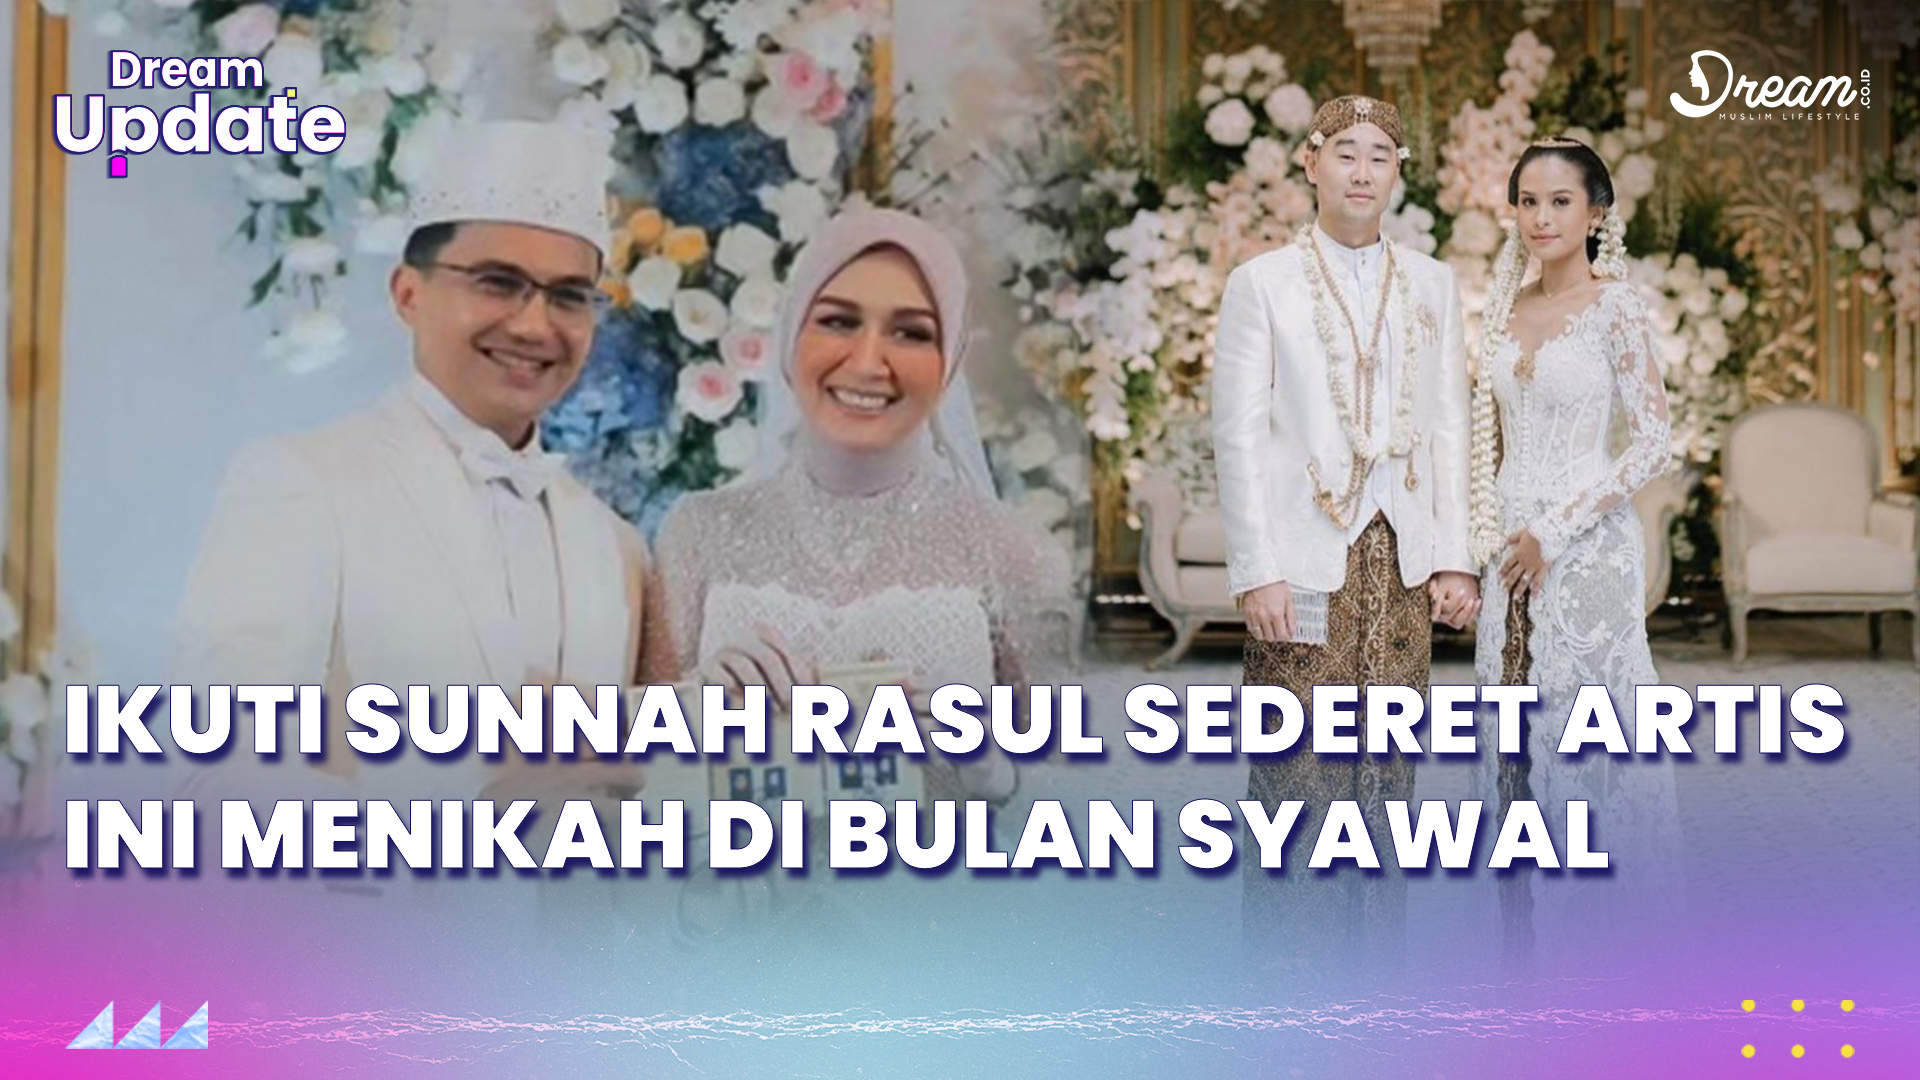 Ikuti Sunnah Rasul, Sederet Artis Ini Menikah di Bulan Syawal